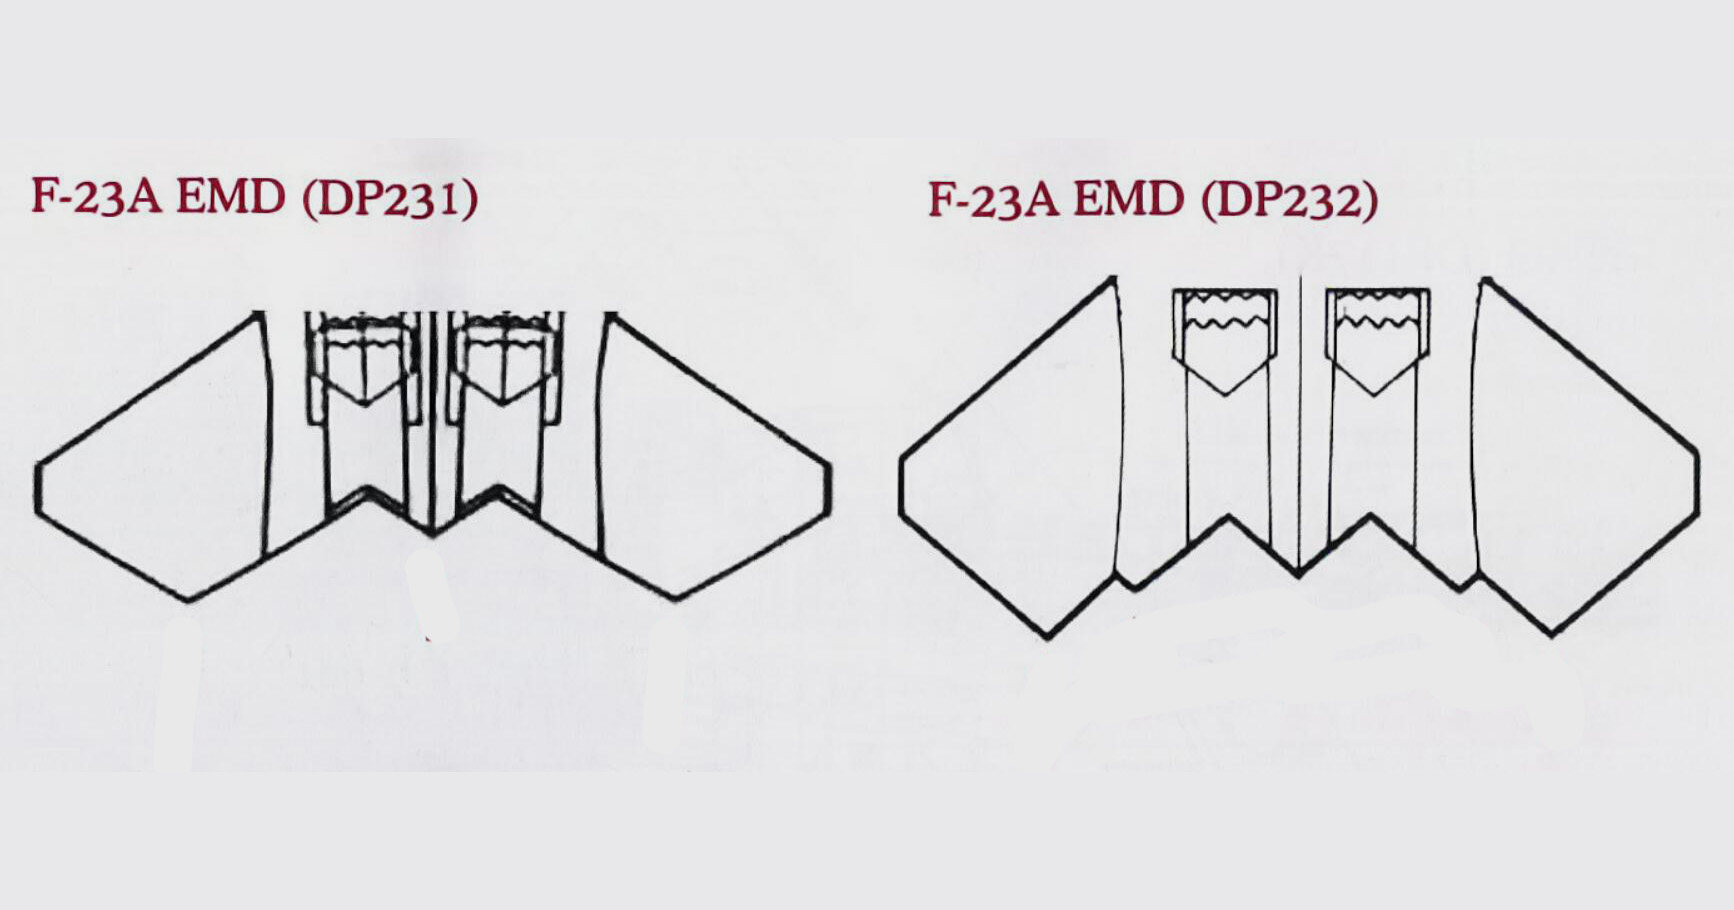 搭载不同发动机的F-23A EMD的机尾后缘外形有所不同。DP231上，后缘尖齿简化为3个。